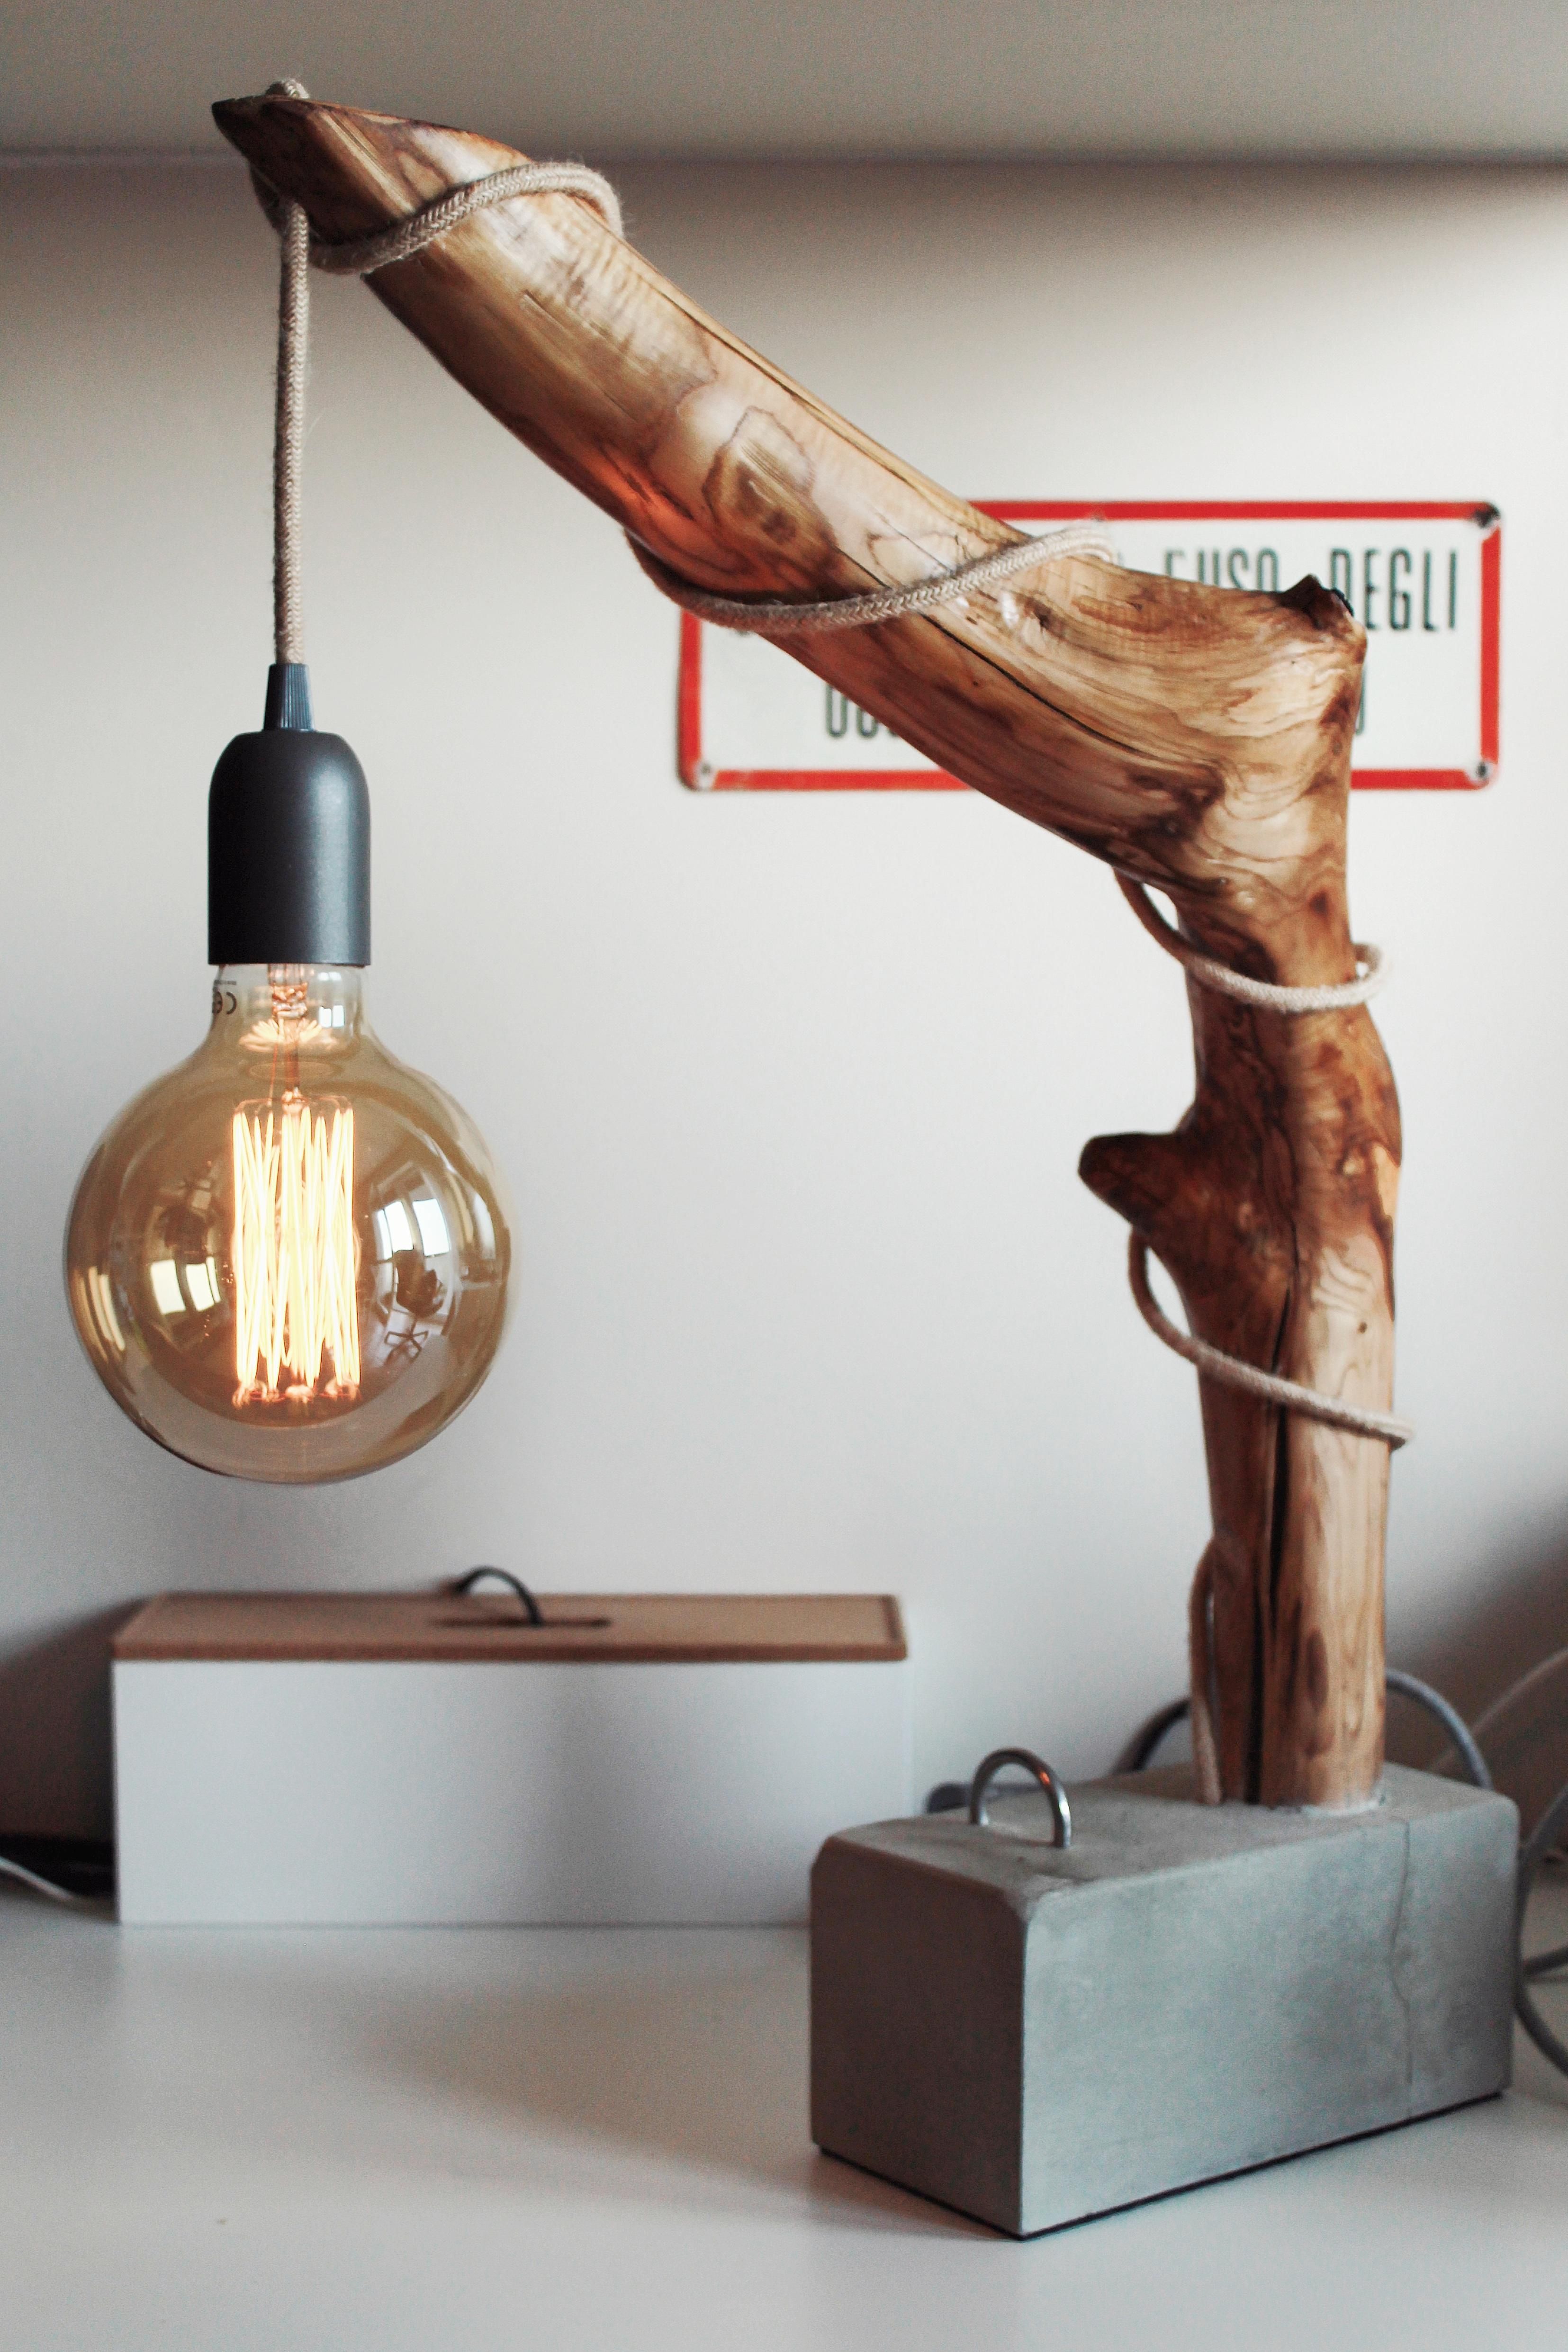 19 diy Lamp wood ideas